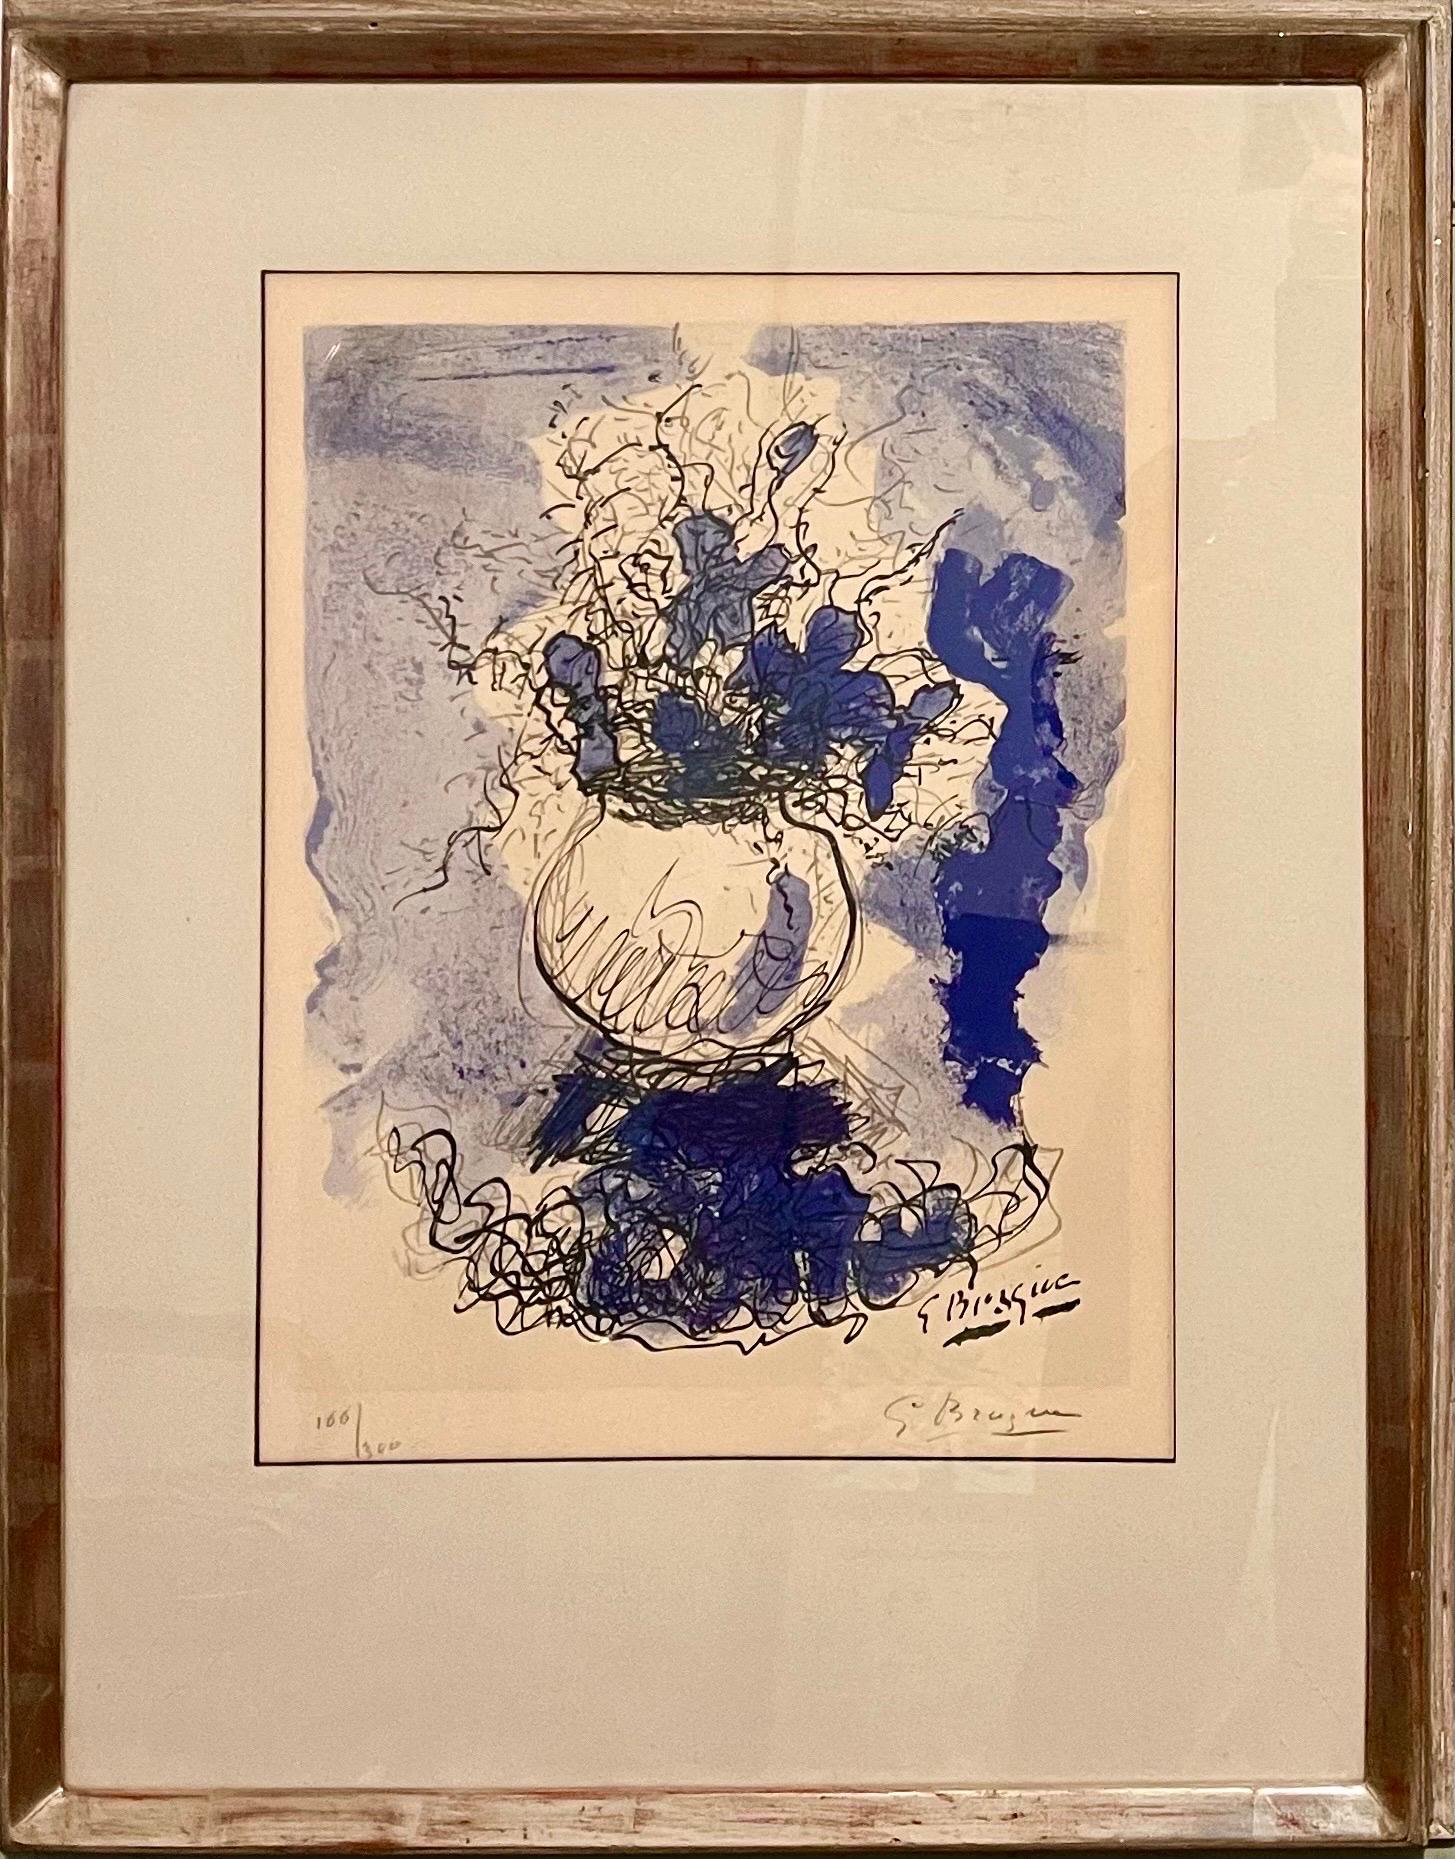 Georges Braque (Franzose, 1882-1963)
Blumenstrauß de Fleurs 
Farblithographie, 1957. Herausgegeben von Maeght, gedruckt von Mourlot, Paris, Frankreich
Nummeriert 166/300 und mit Bleistift handsigniert. 
Abmessungen: Rahmen 28 x 22  sicht 17,5 x